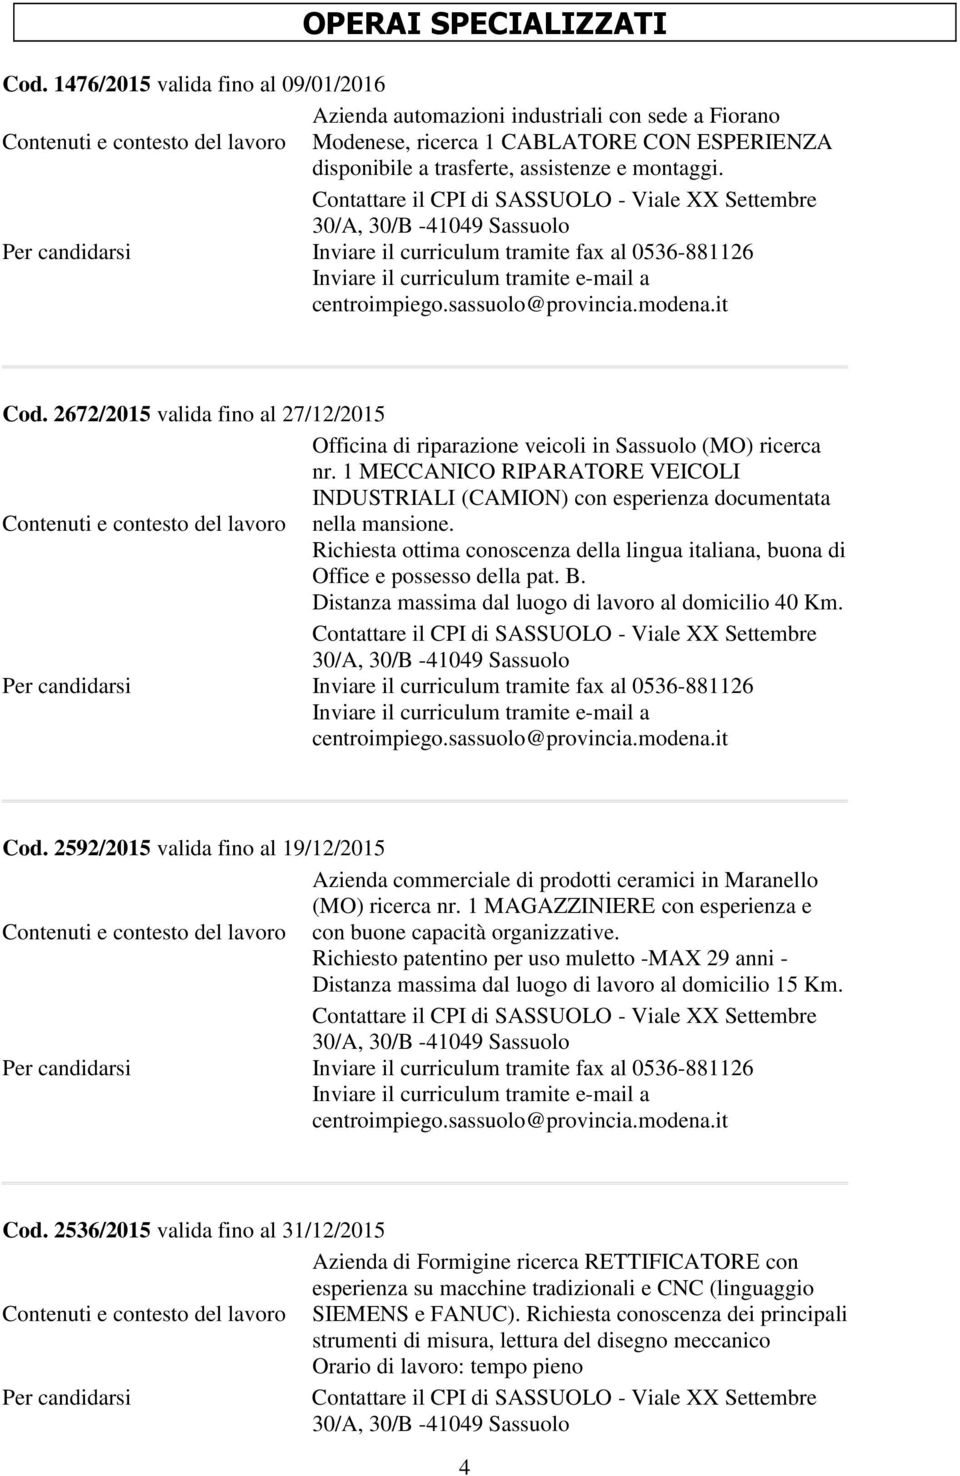 2672/2015 valida fino al 27/12/2015 Officina di riparazione veicoli in Sassuolo (MO) ricerca nr. 1 MECCANICO RIPARATORE VEICOLI INDUSTRIALI (CAMION) con esperienza documentata nella mansione.